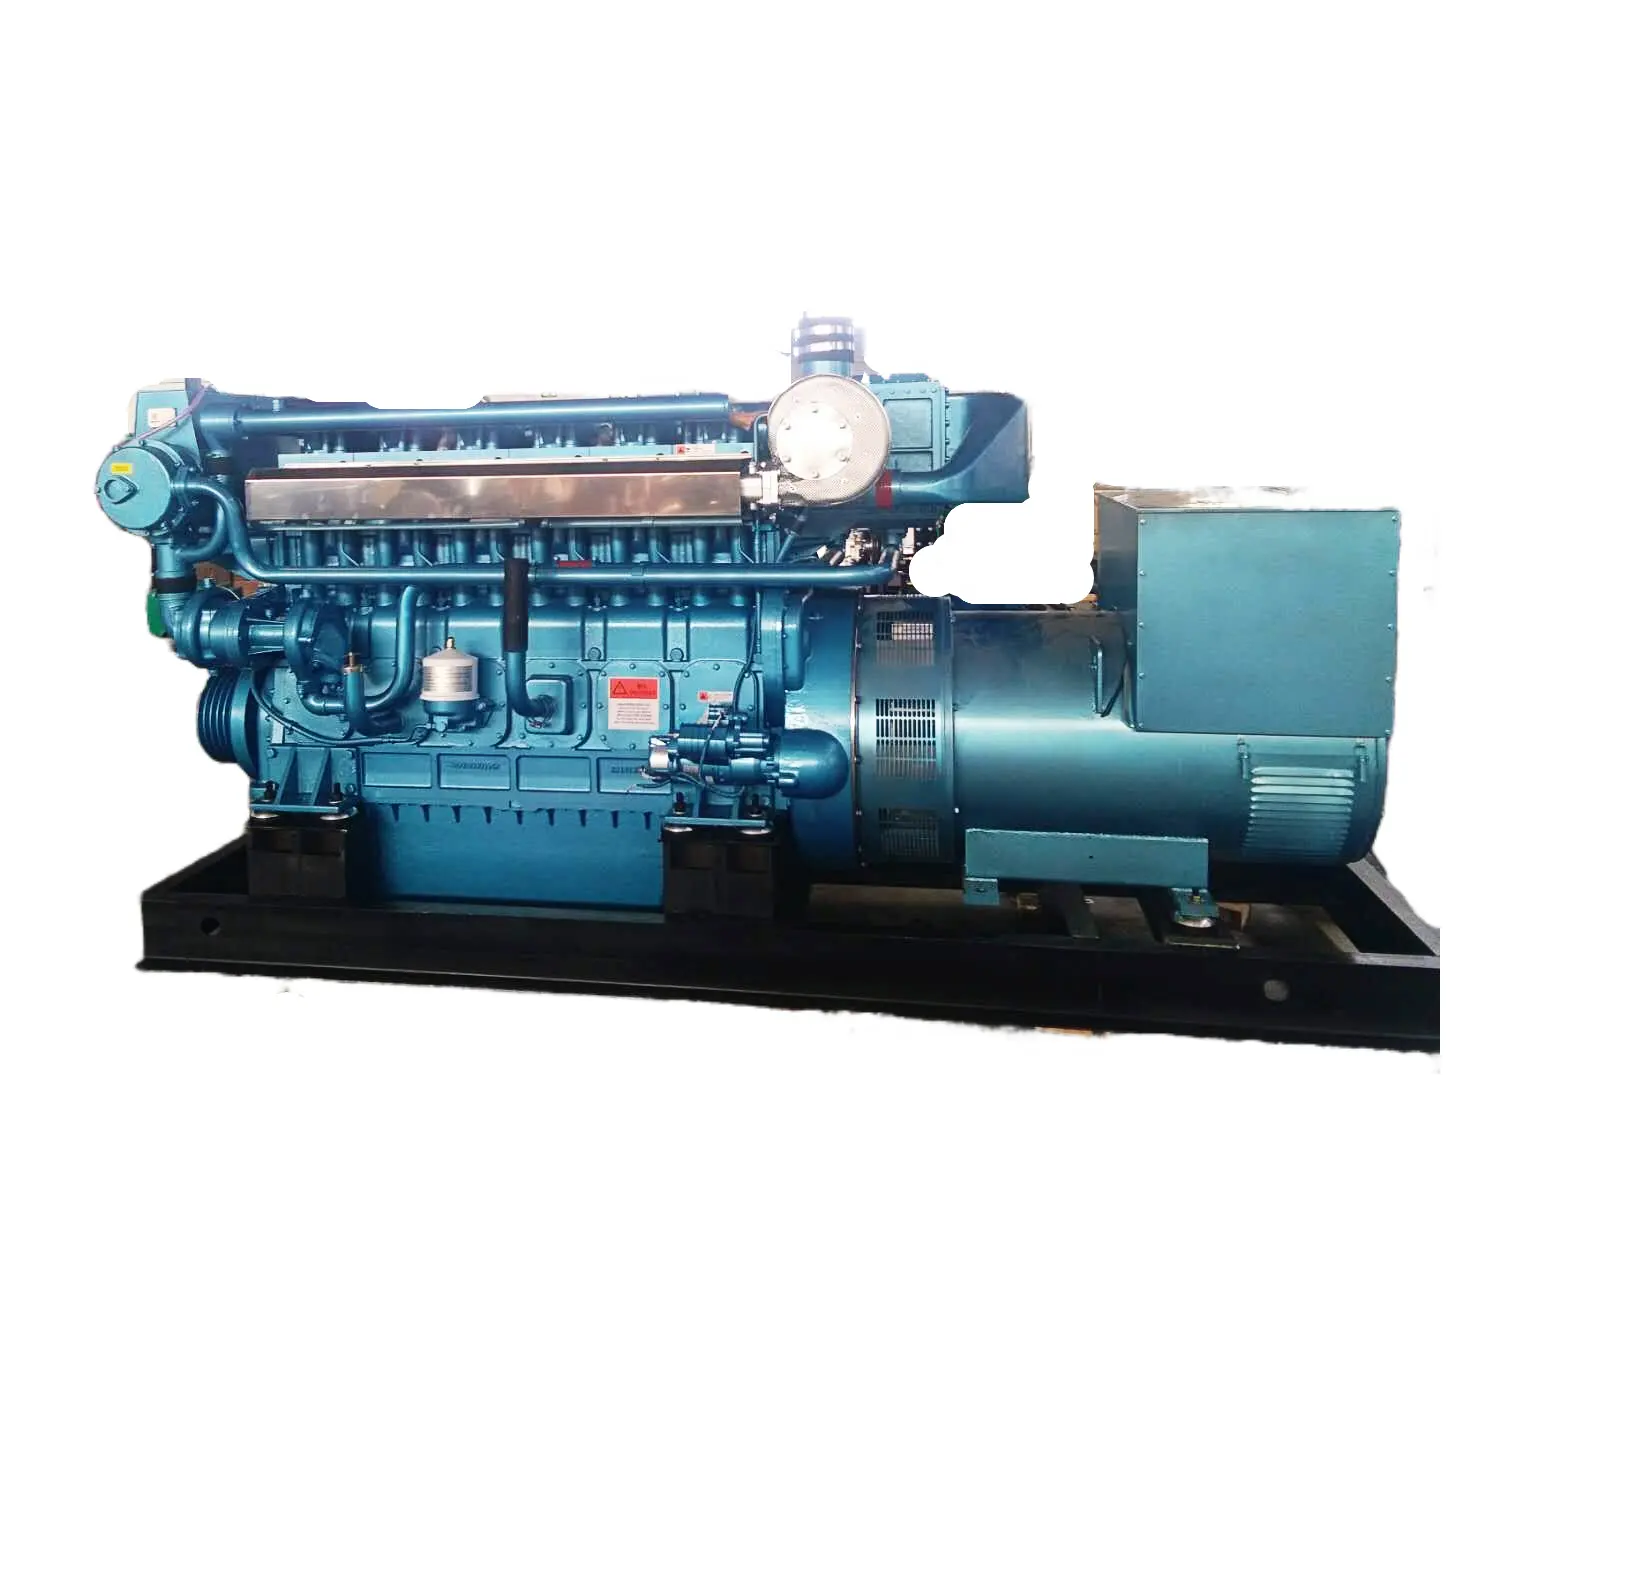 Sinooutput marine diesel generator CCFJ400J-W 400KW 1500rpm 50HZ weichai motor WHM6160 Stamford alternator